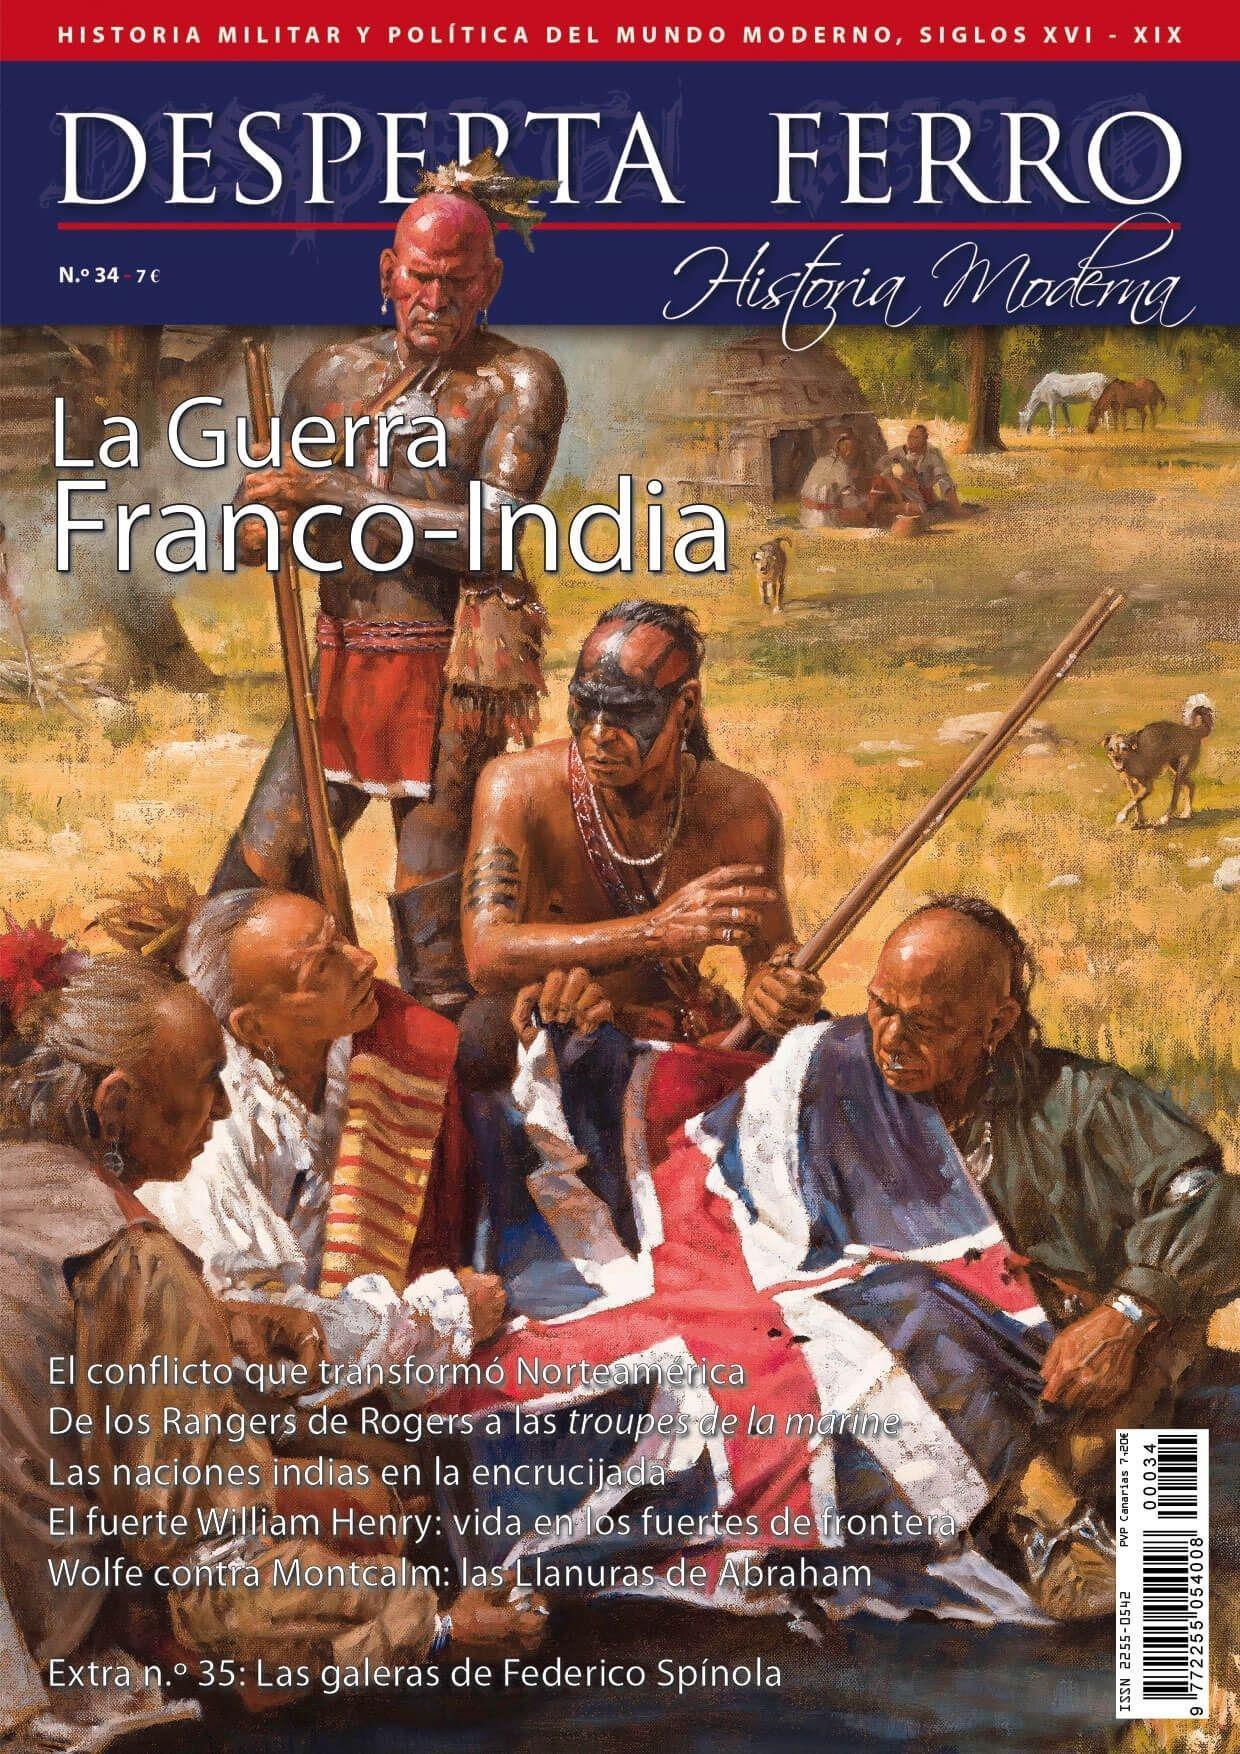 Desperta Ferro. Historia Moderna nº 34: La guerra franco-india. 